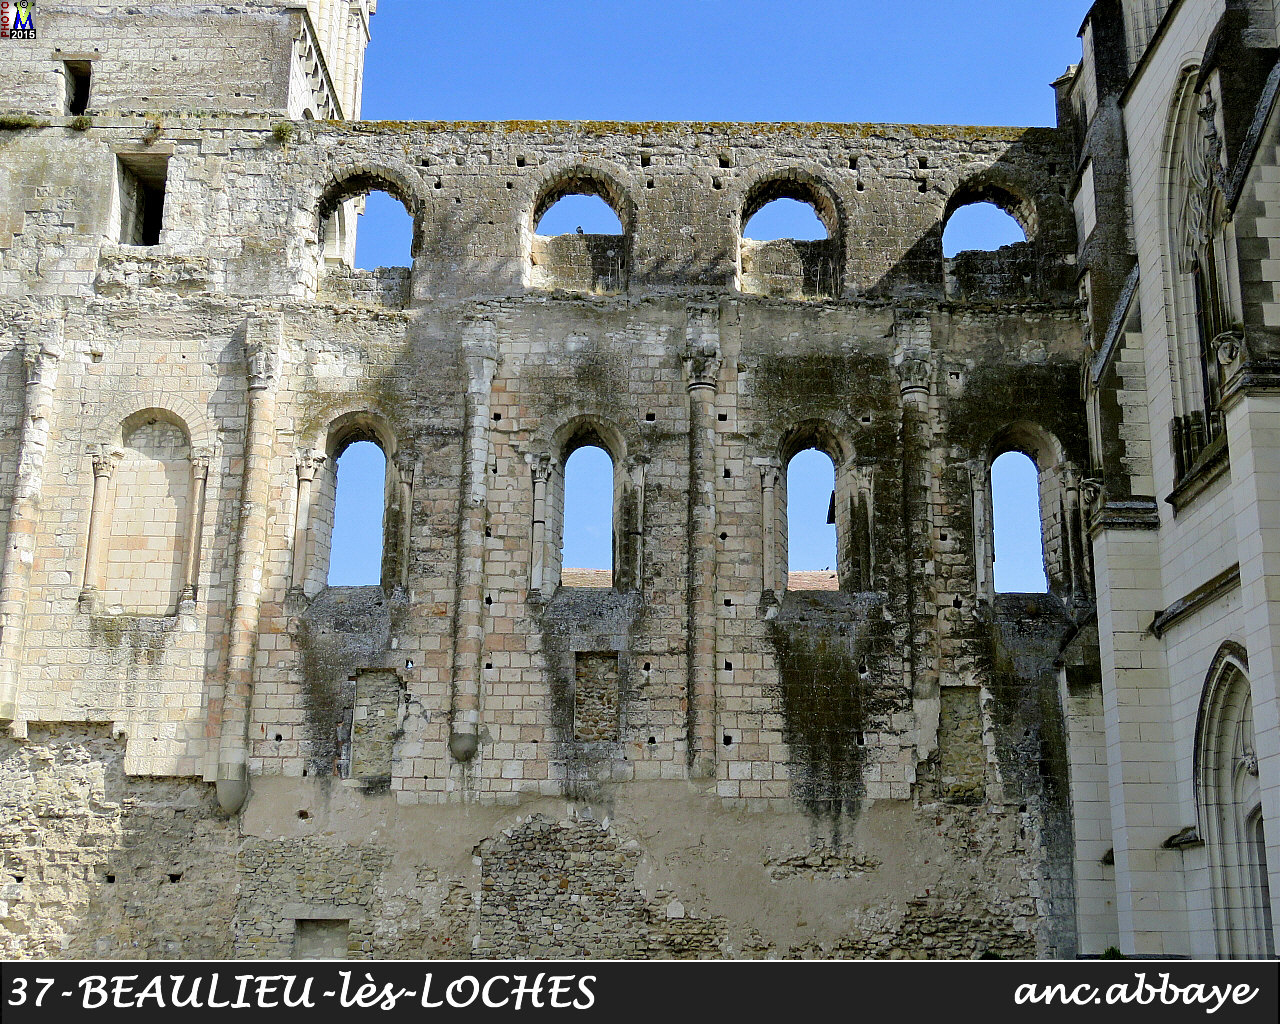 37BEAULIEU-LOCHES-abbaye_102.jpg